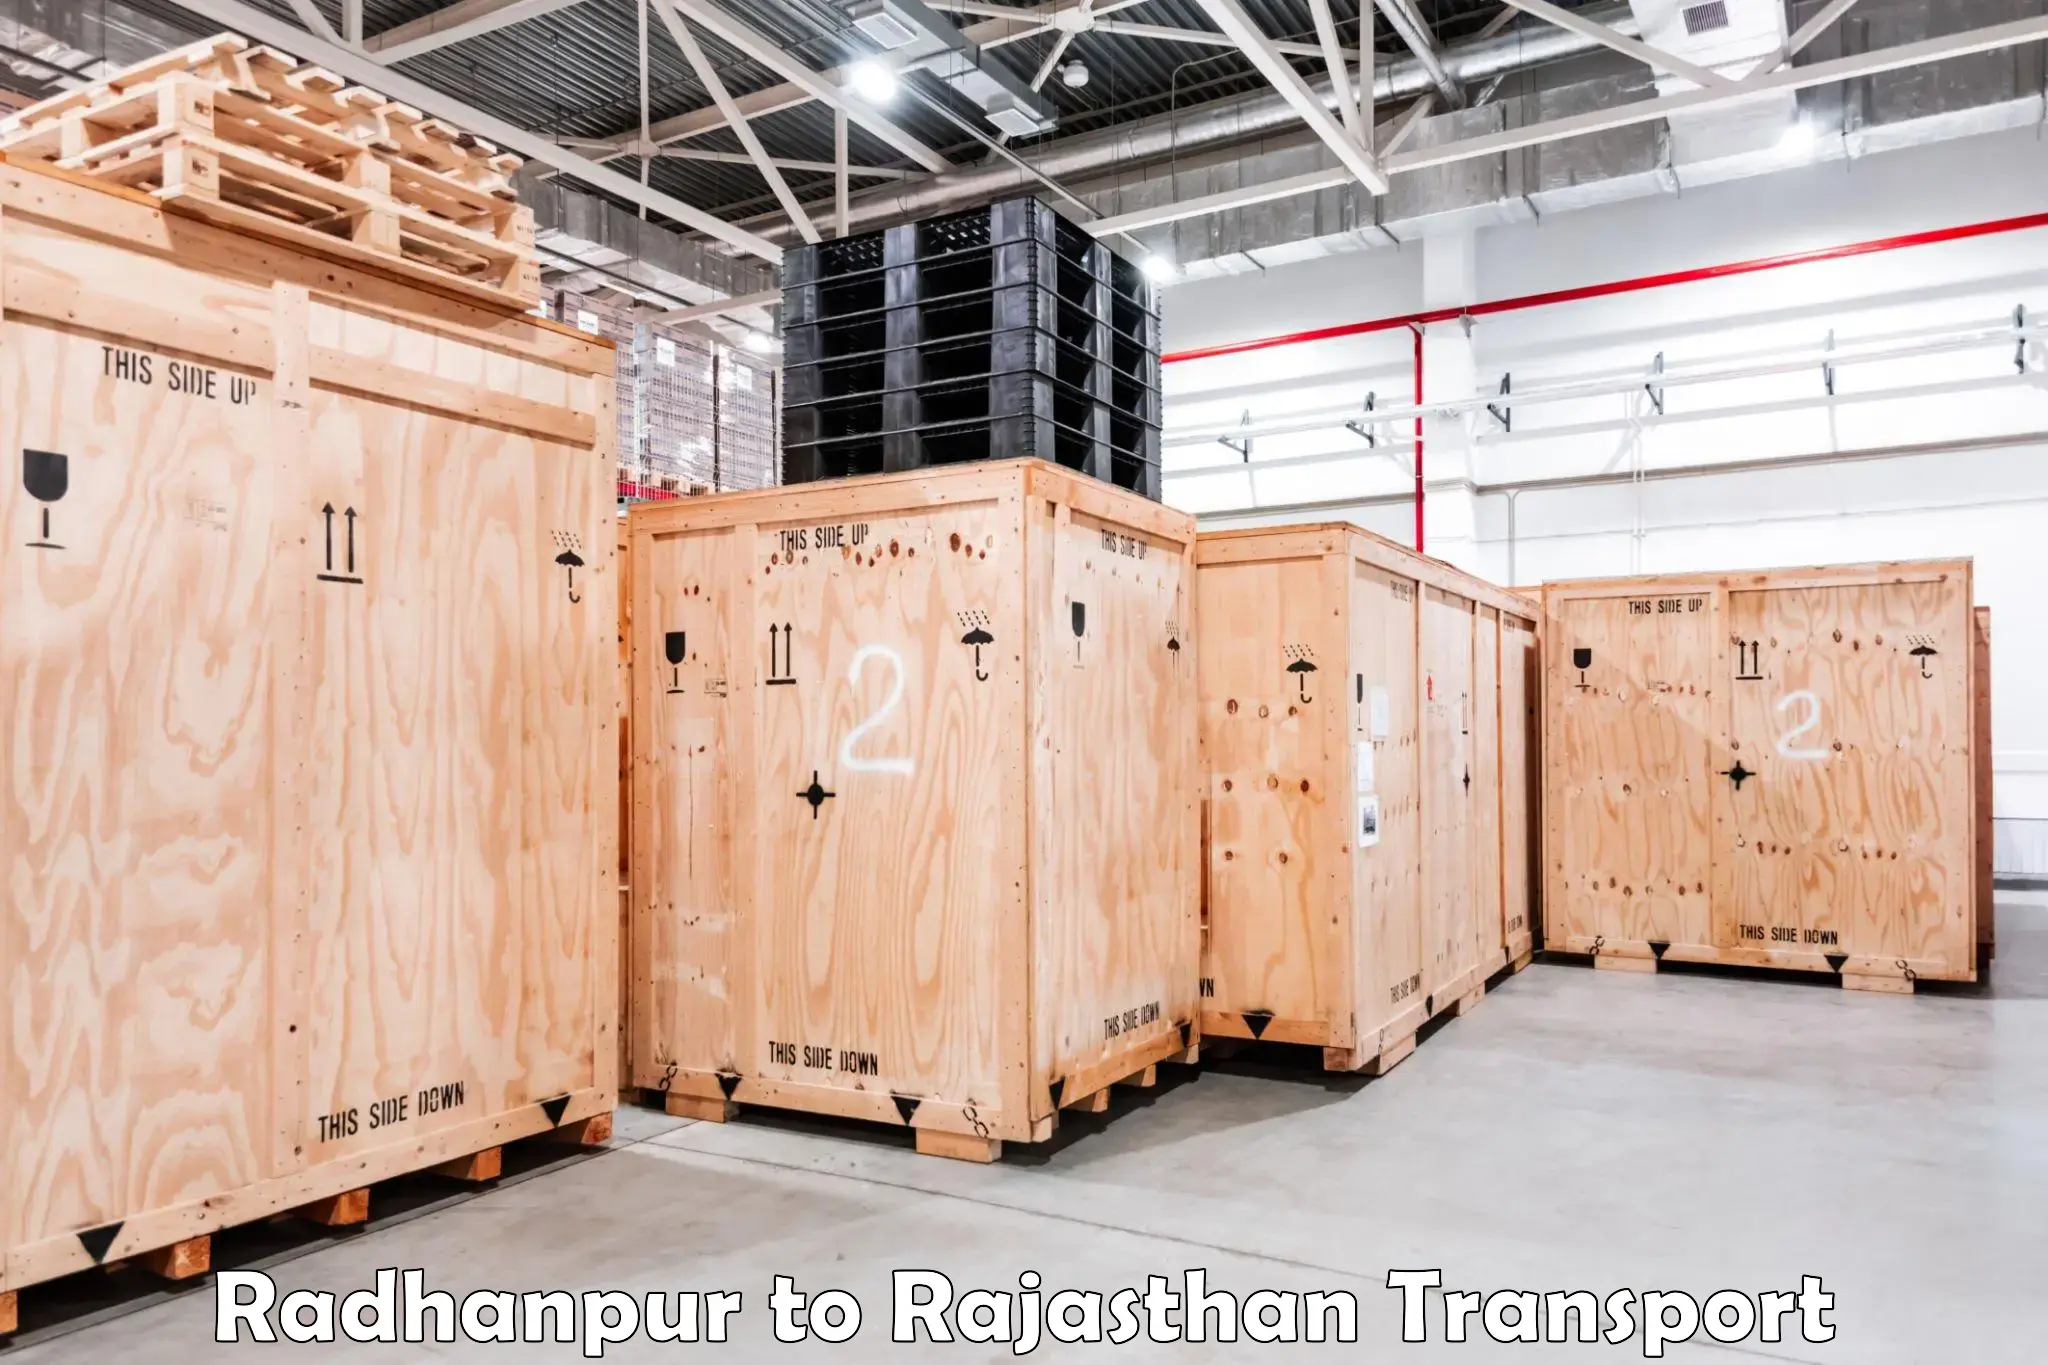 Interstate transport services Radhanpur to Chittorgarh